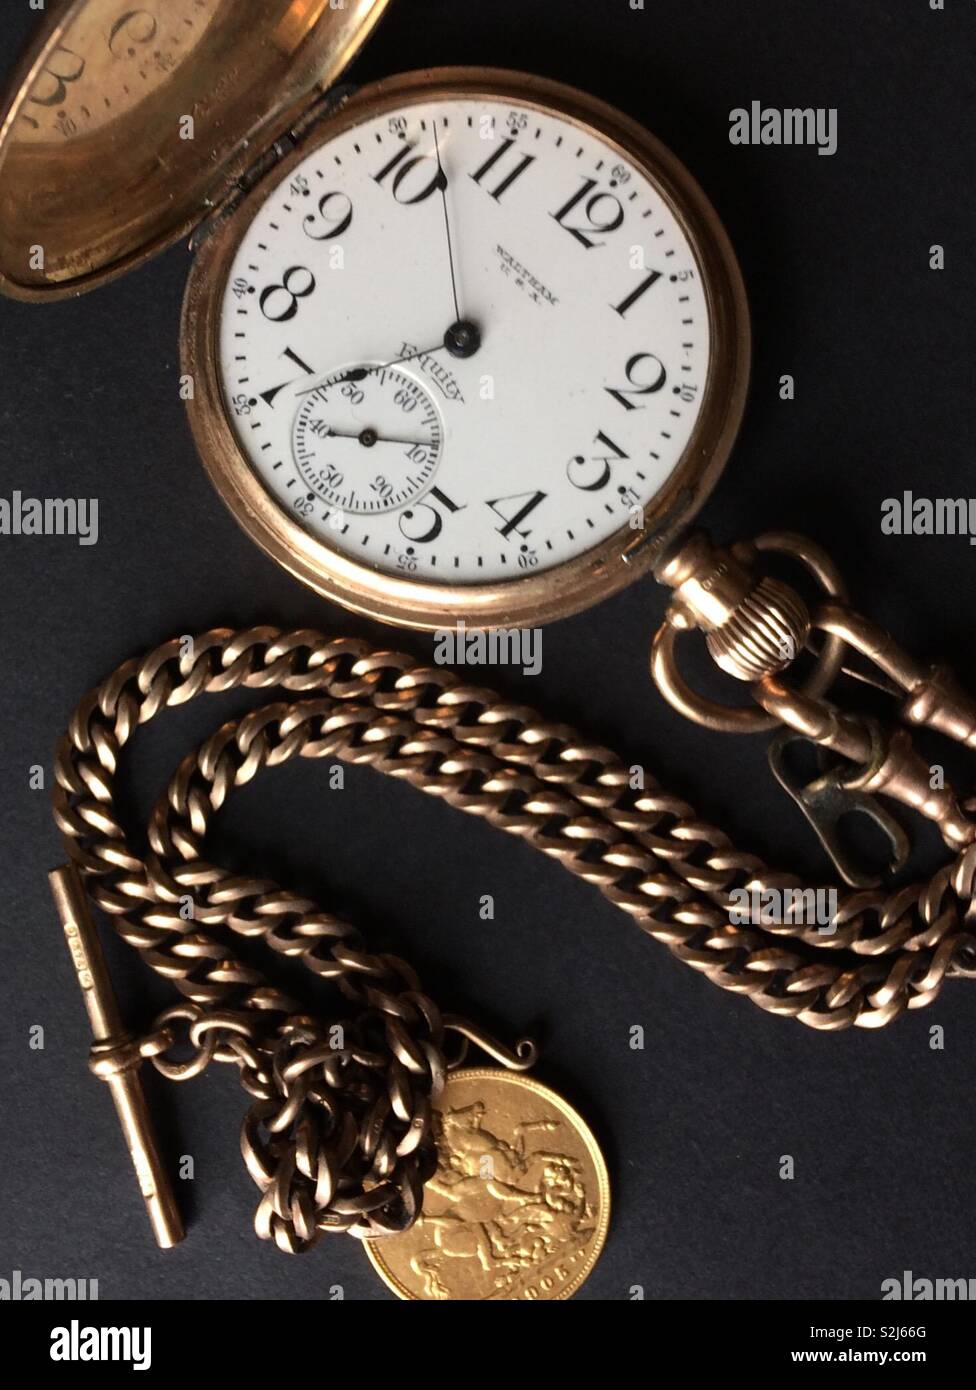 https://c8.alamy.com/compes/s2j66g/vintage-waltham-equidad-oro-reloj-de-bolsillo-con-cadena-de-oro-y-soberana-s2j66g.jpg